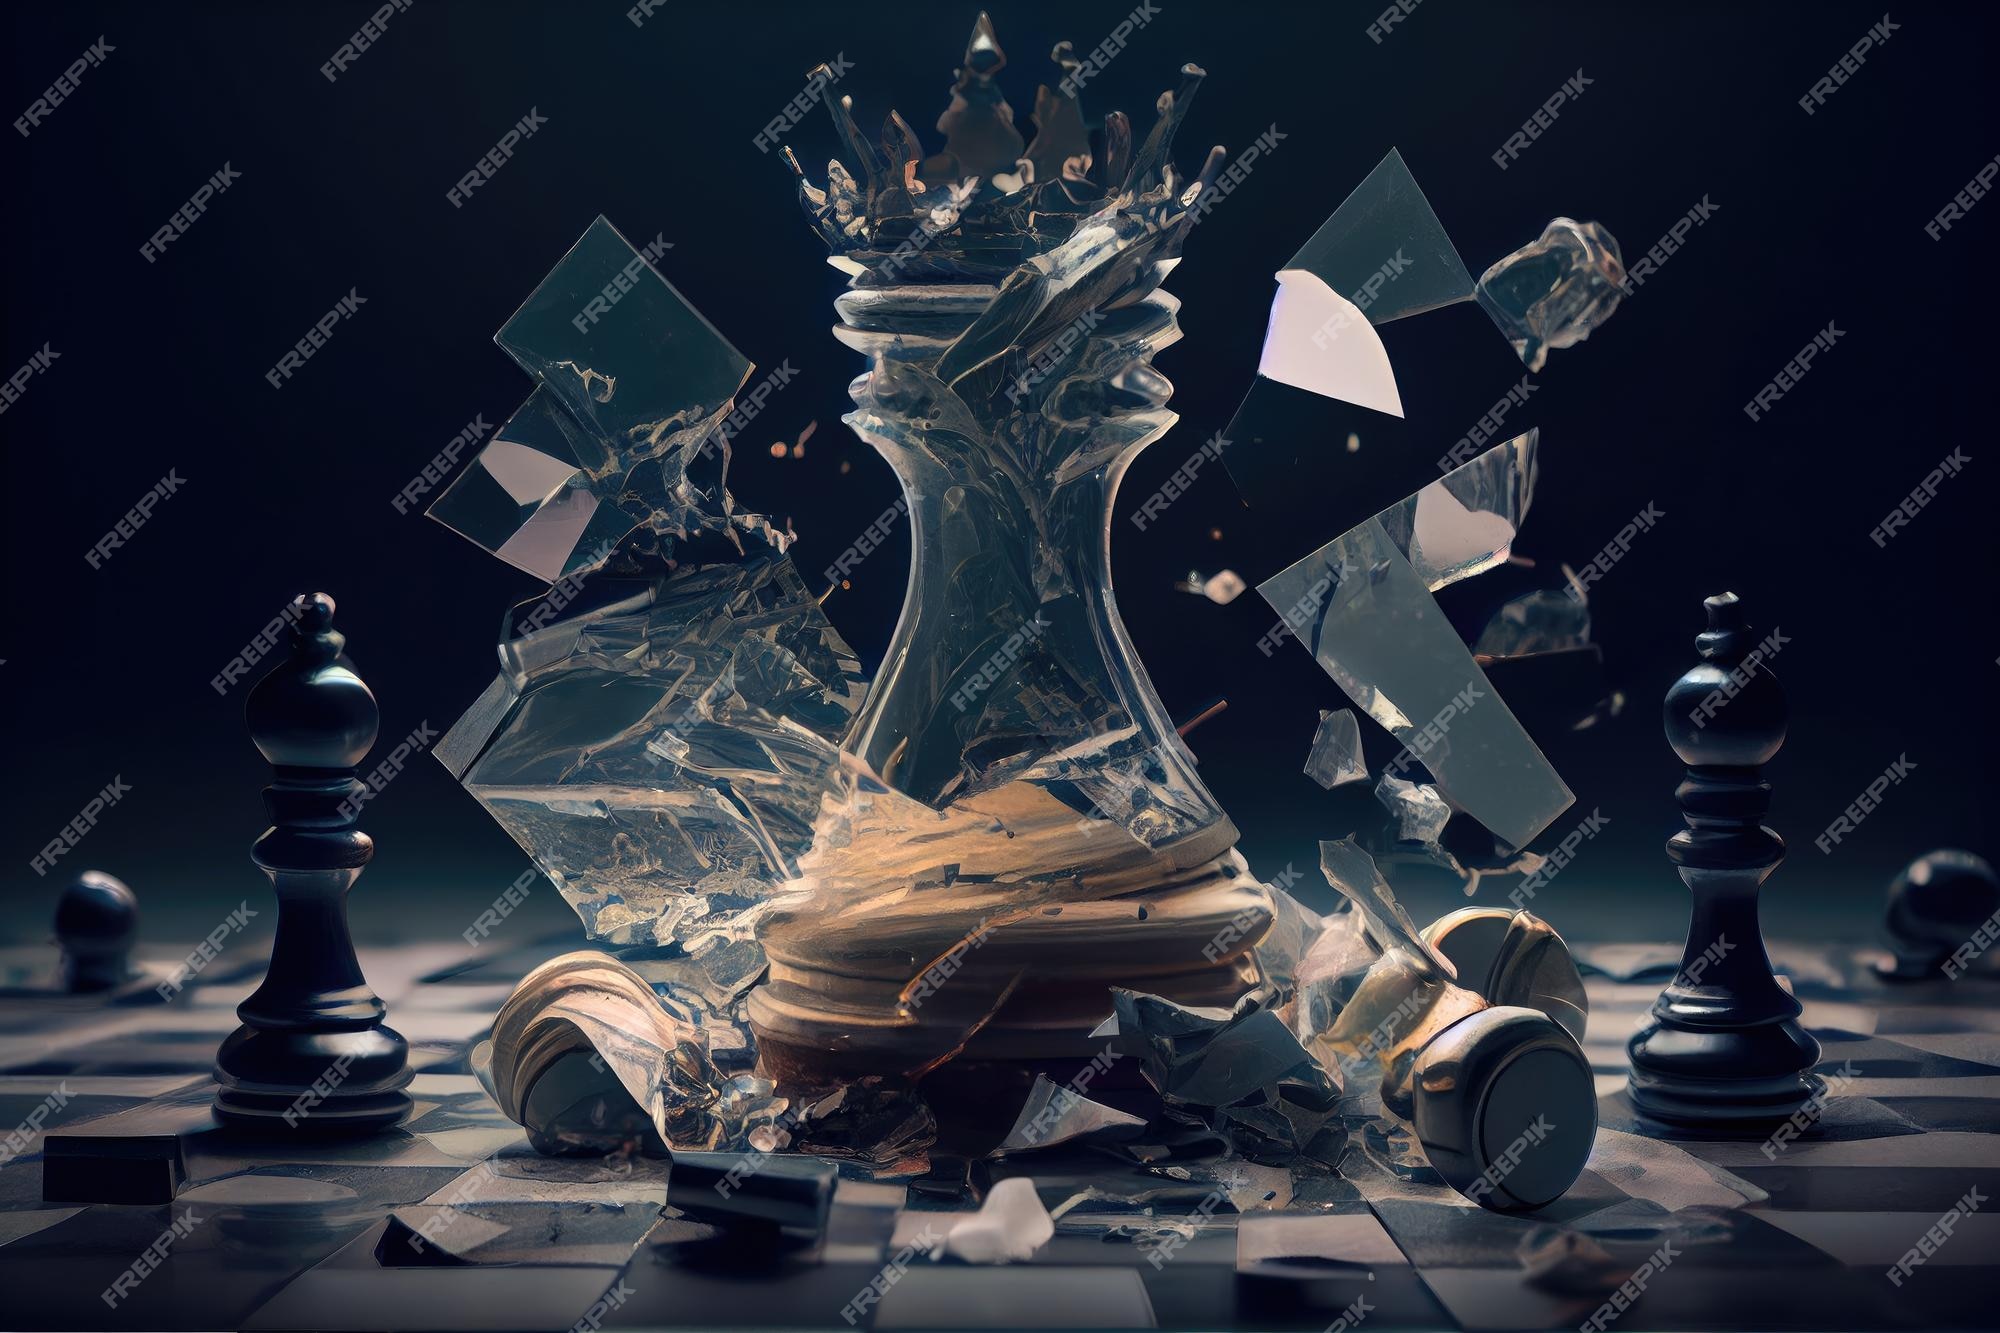 Foto Um tabuleiro de xadrez de vidro com peças de xadrez sobre ele – Imagem  de Xadrez grátis no Unsplash